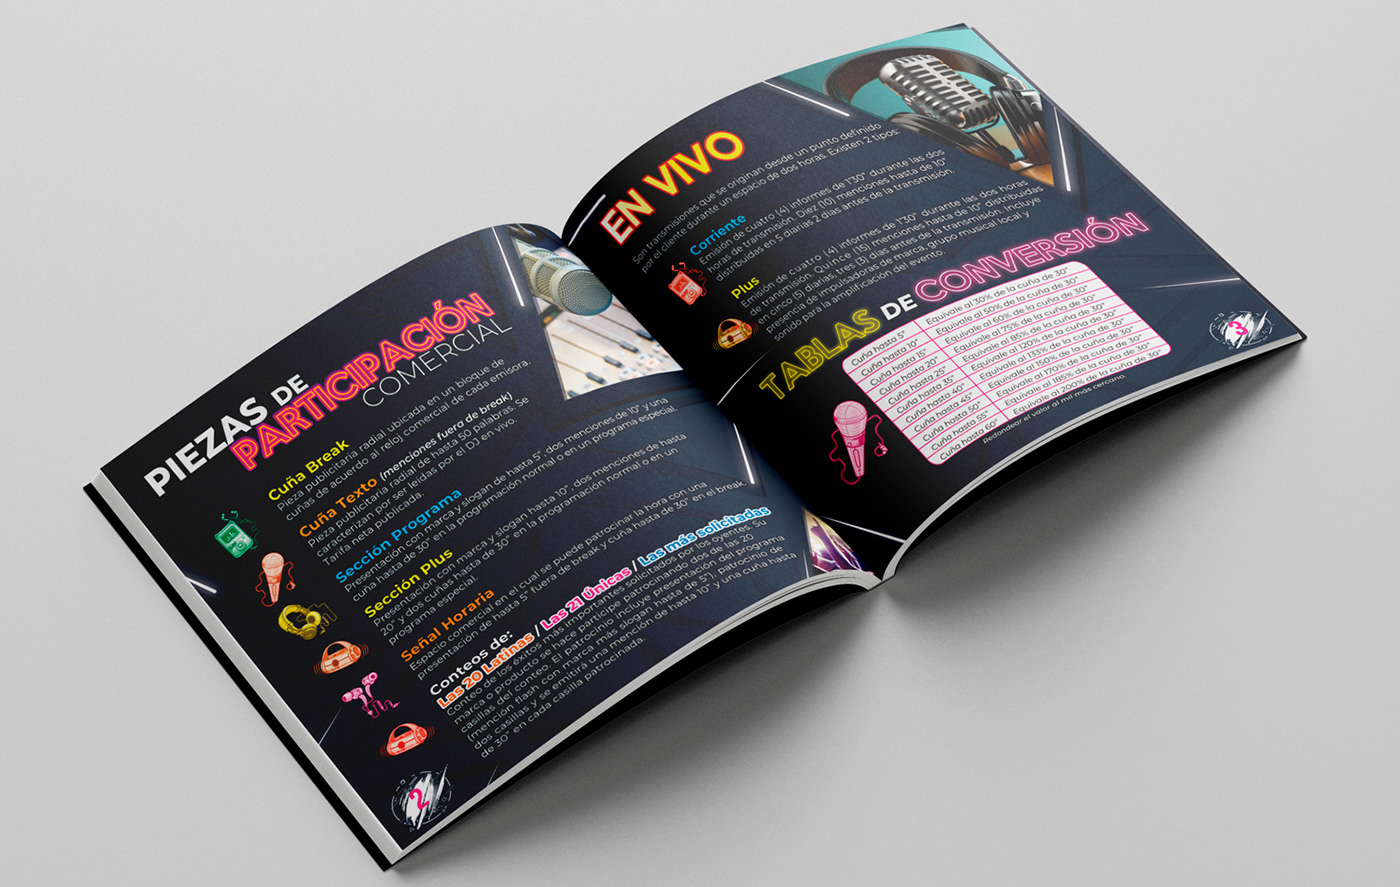 Advertising  book cover book design creative design graphic design  Radio